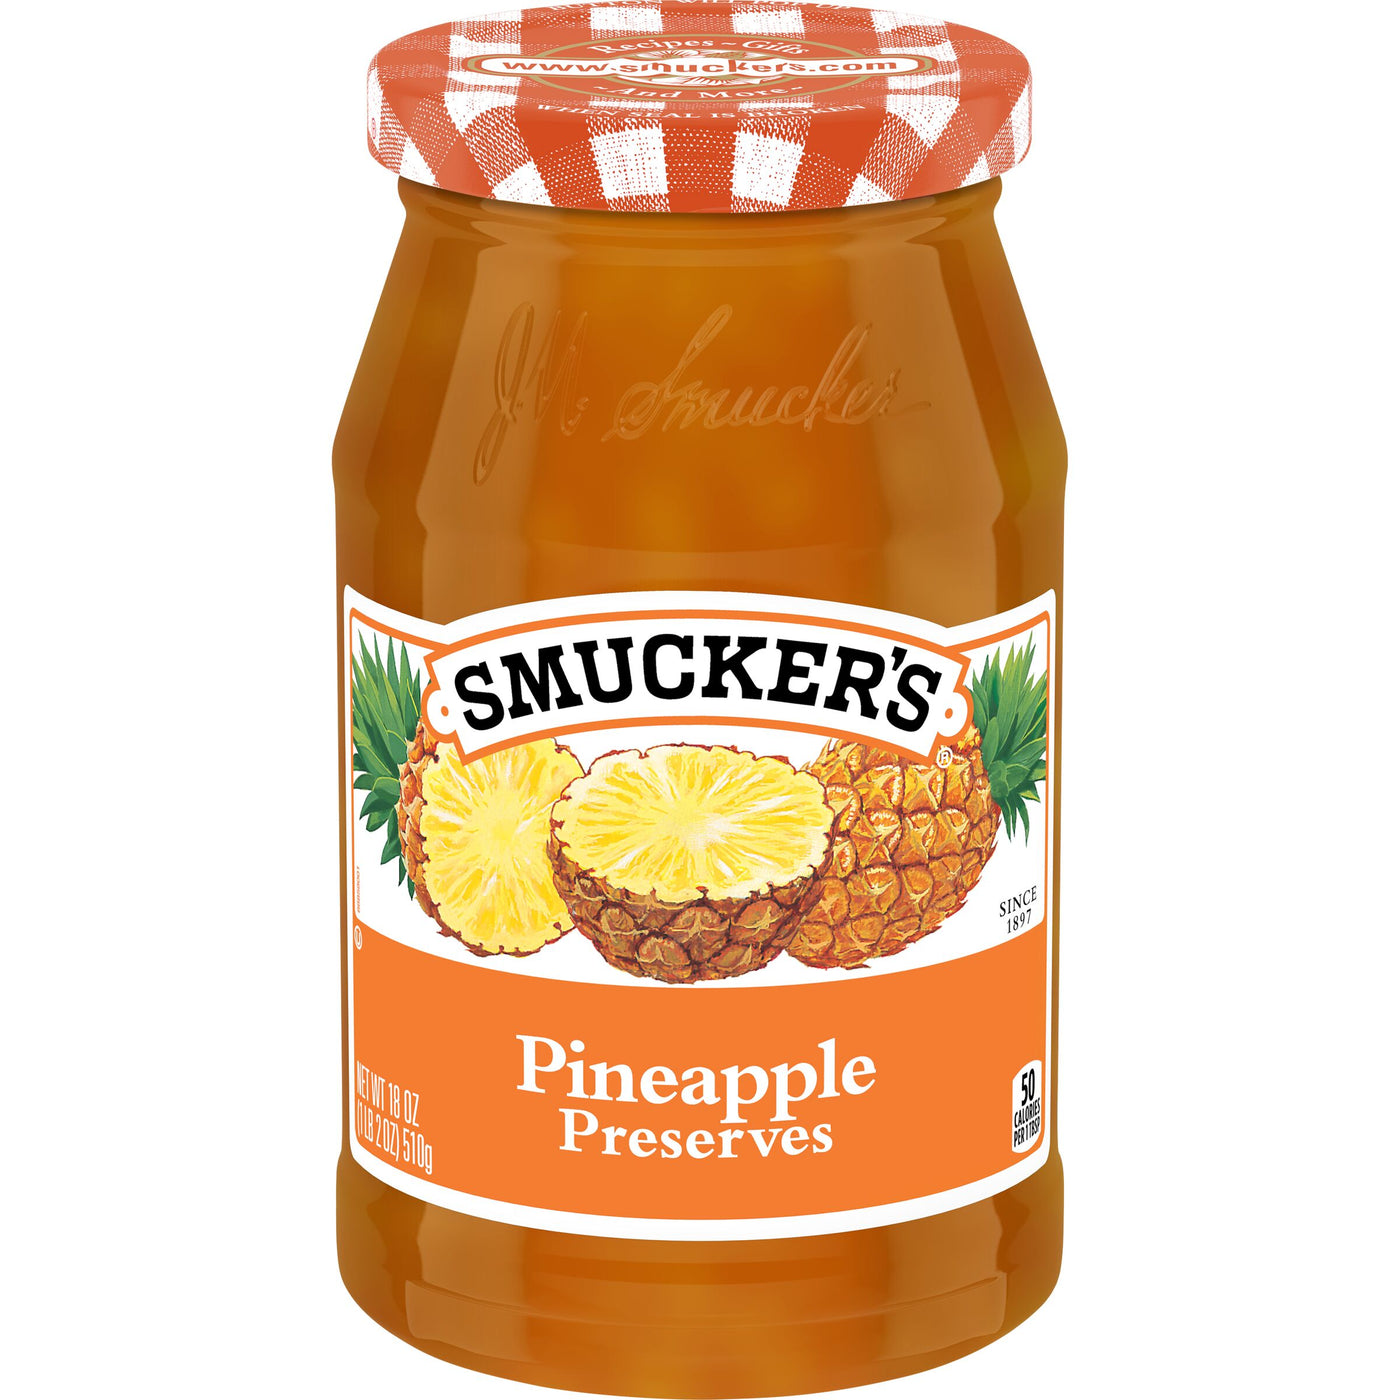 Smucker's Pineapple Preserves